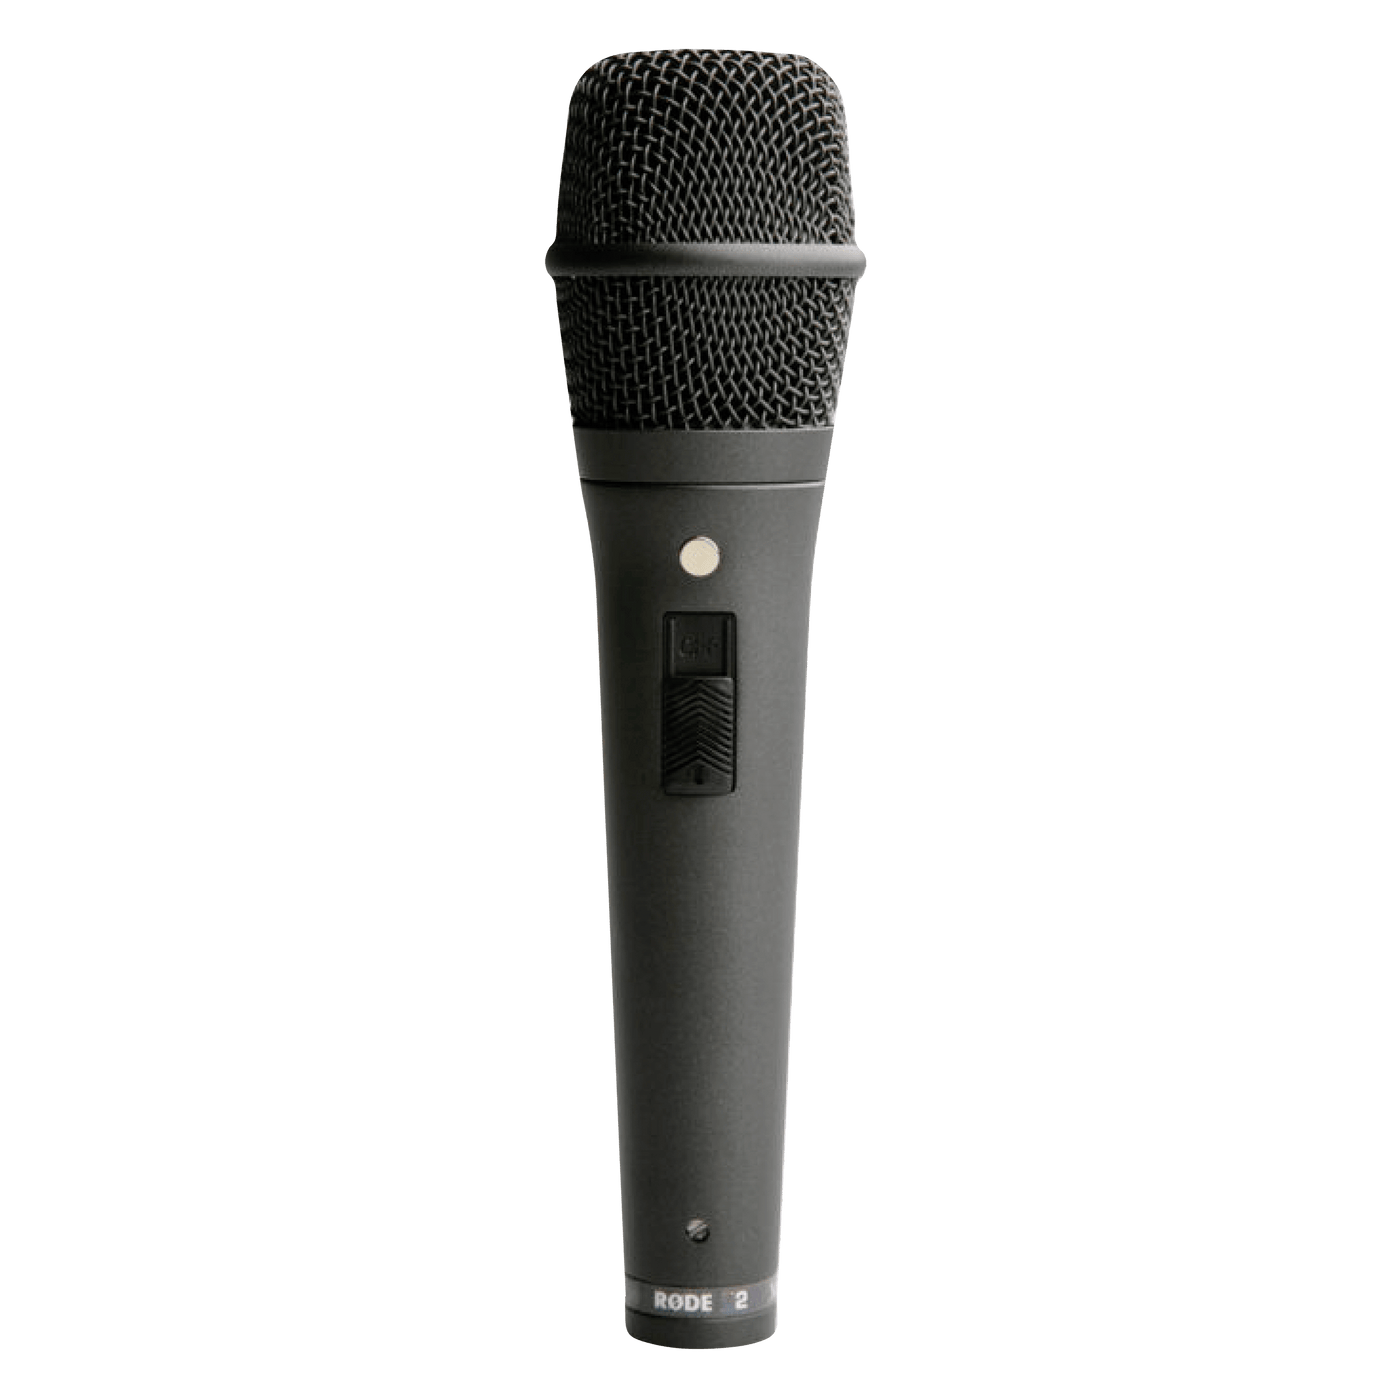 Rode M2 - $134990 - Gearhub - El micrófono de condensador RODE M2 se beneficia de la larga experiencia en el diseños de micrófonos para estudio y la aplica al sonido directo.Combinando una calidad sonora equivalente a los mejores micrófonos con características como la montura anti-golpes integrada para reducir el ruido en manipulación y una respuesta ajustada para reducir el feedback. Por esto y más, el Rode M2 es la opción ideal para complementar tu kit de micrófonos para sonido en vivo . Tipo • Condensado